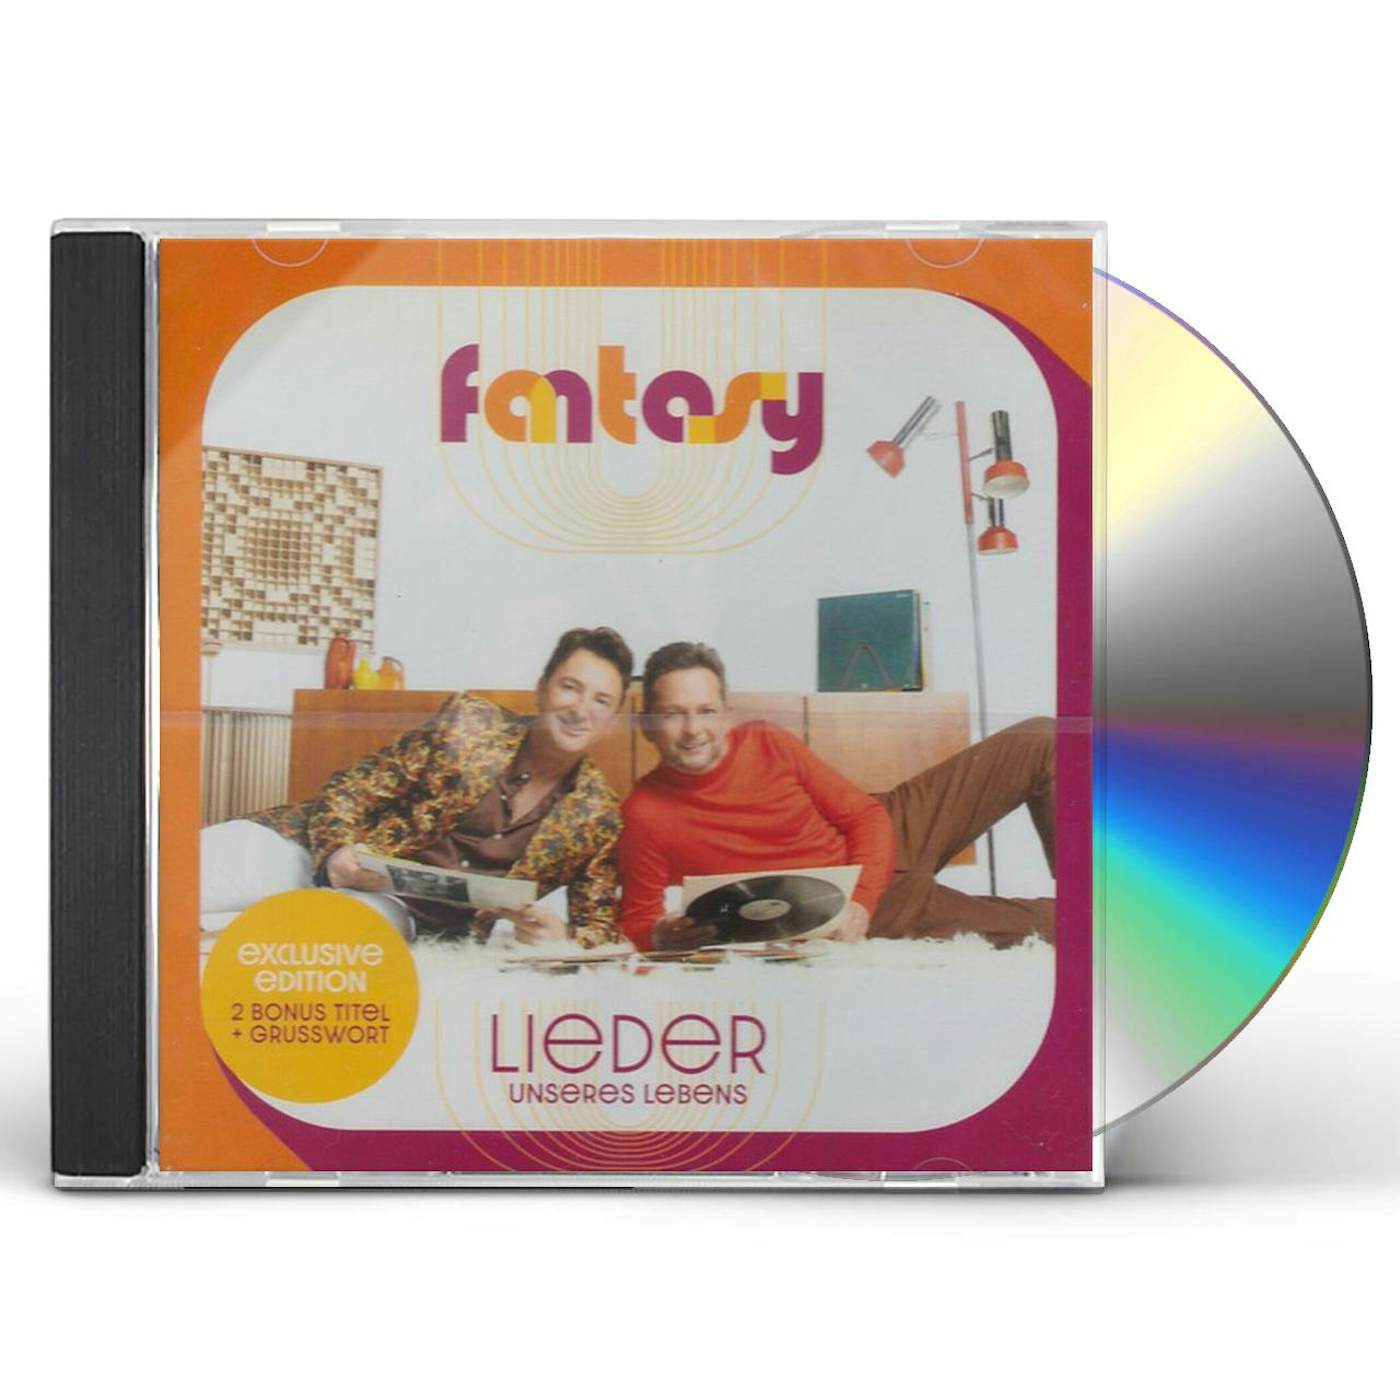 Fantasy LIEDER UNSERES LEBENS CD